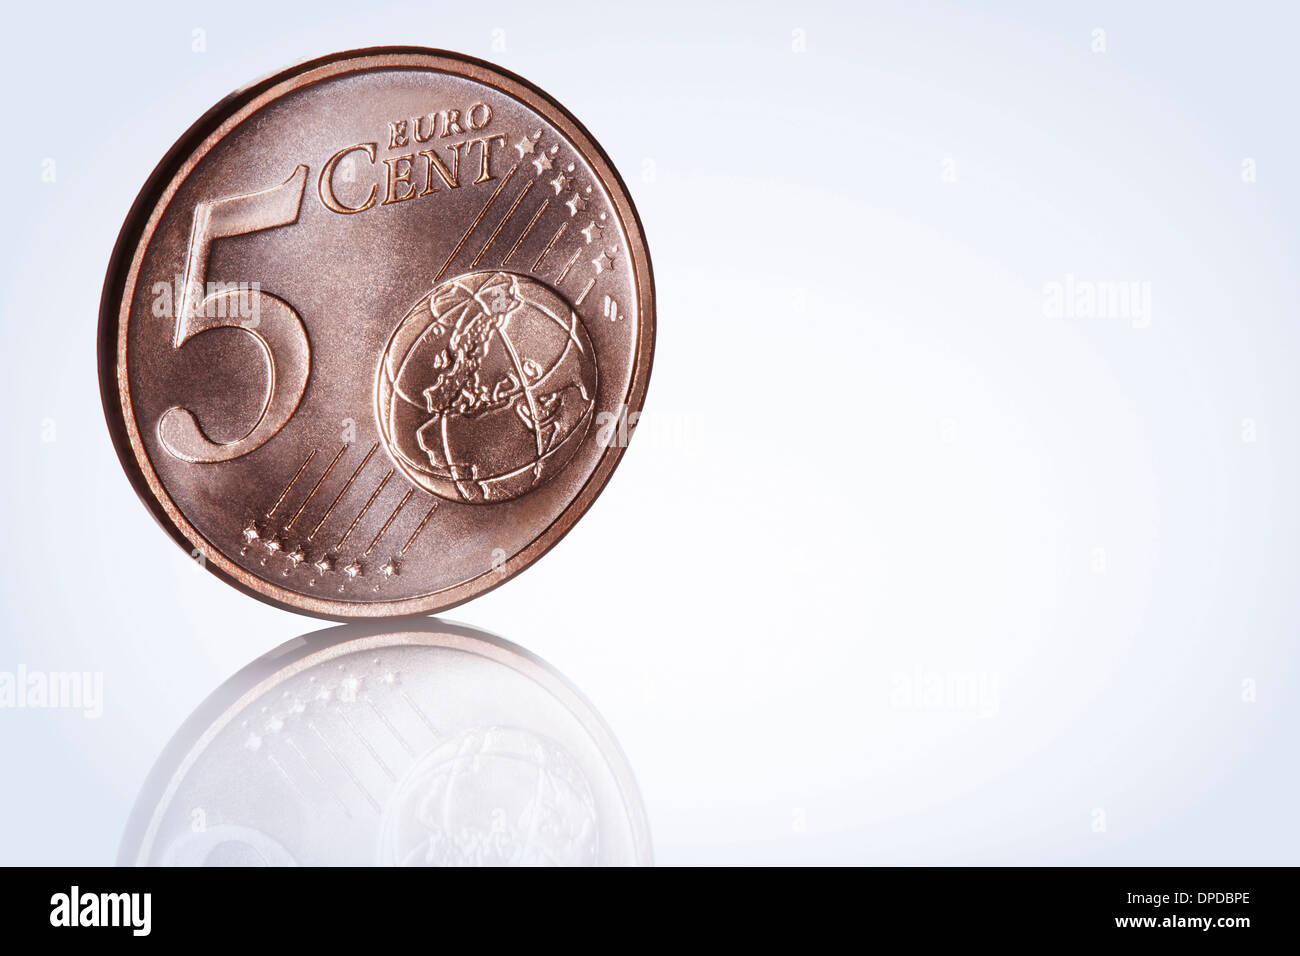 euro cent coin Stock Photo